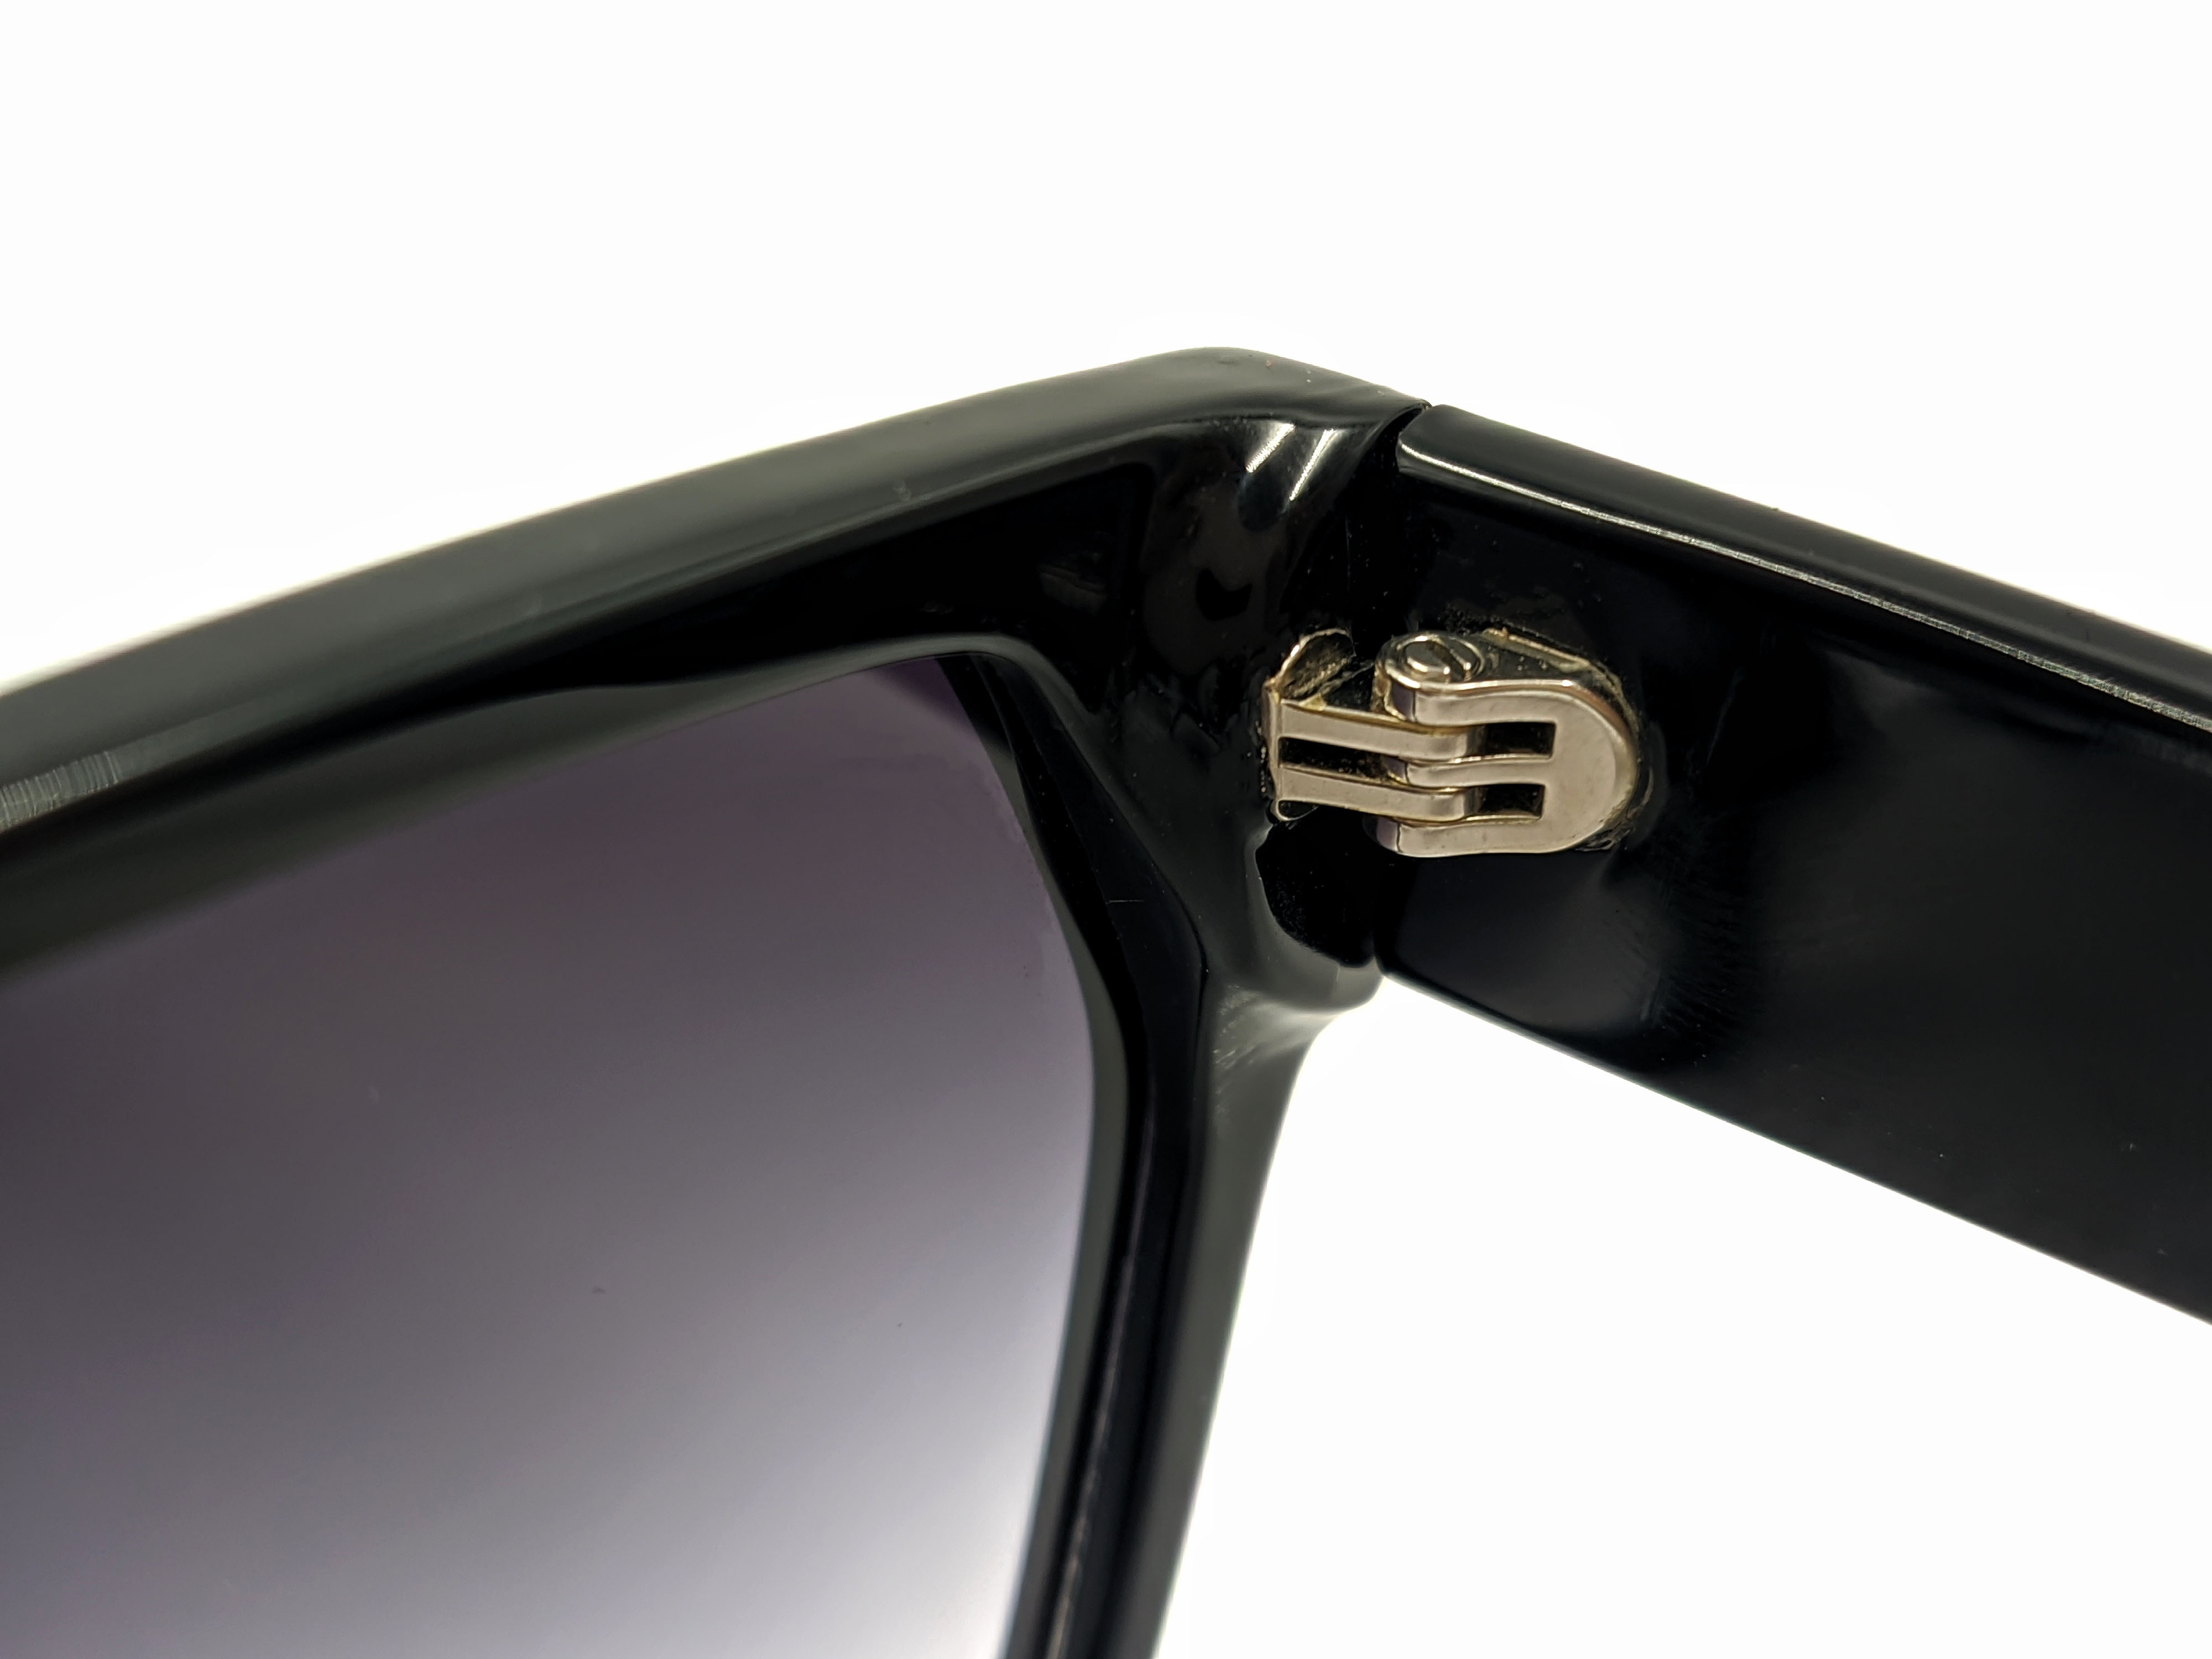 Gafas de sol cuadradas de acetato personalizadas con degradado negro UV400, gafas de sol de gran tamaño antiultravioleta para mujer, 2021 tonos de moda para hombre